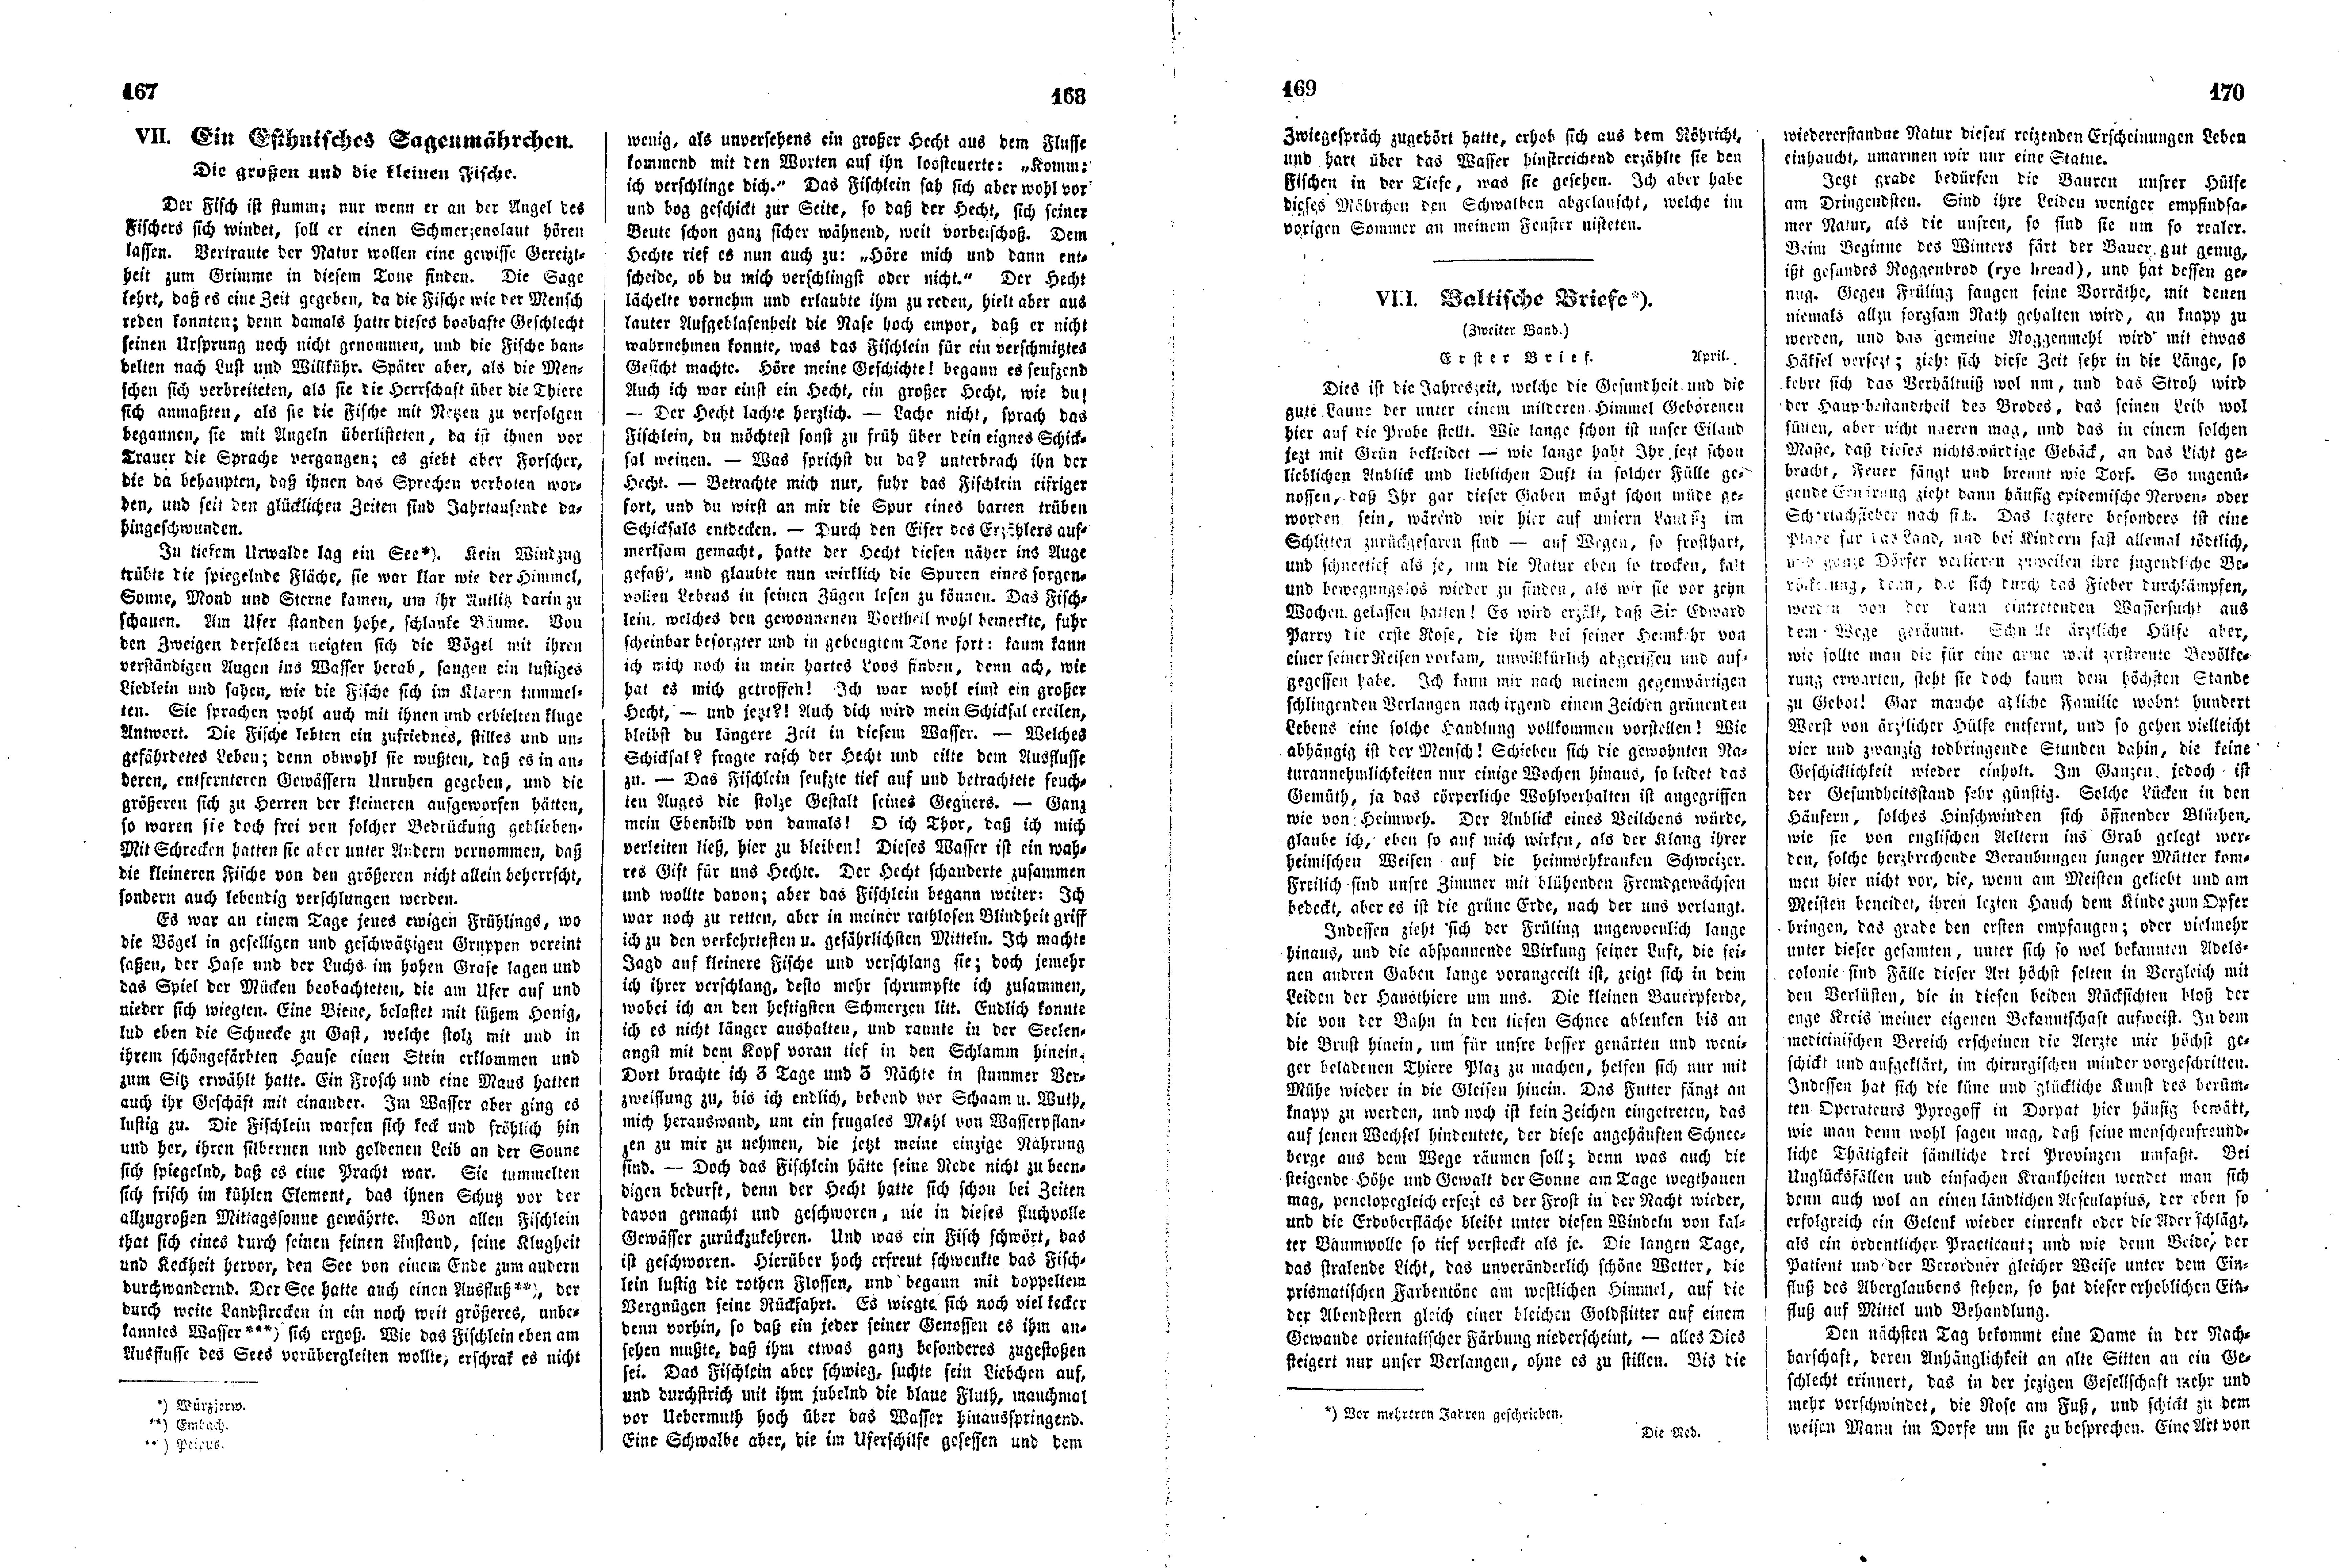 Das Inland [11] (1846) | 47. (167-170) Haupttext